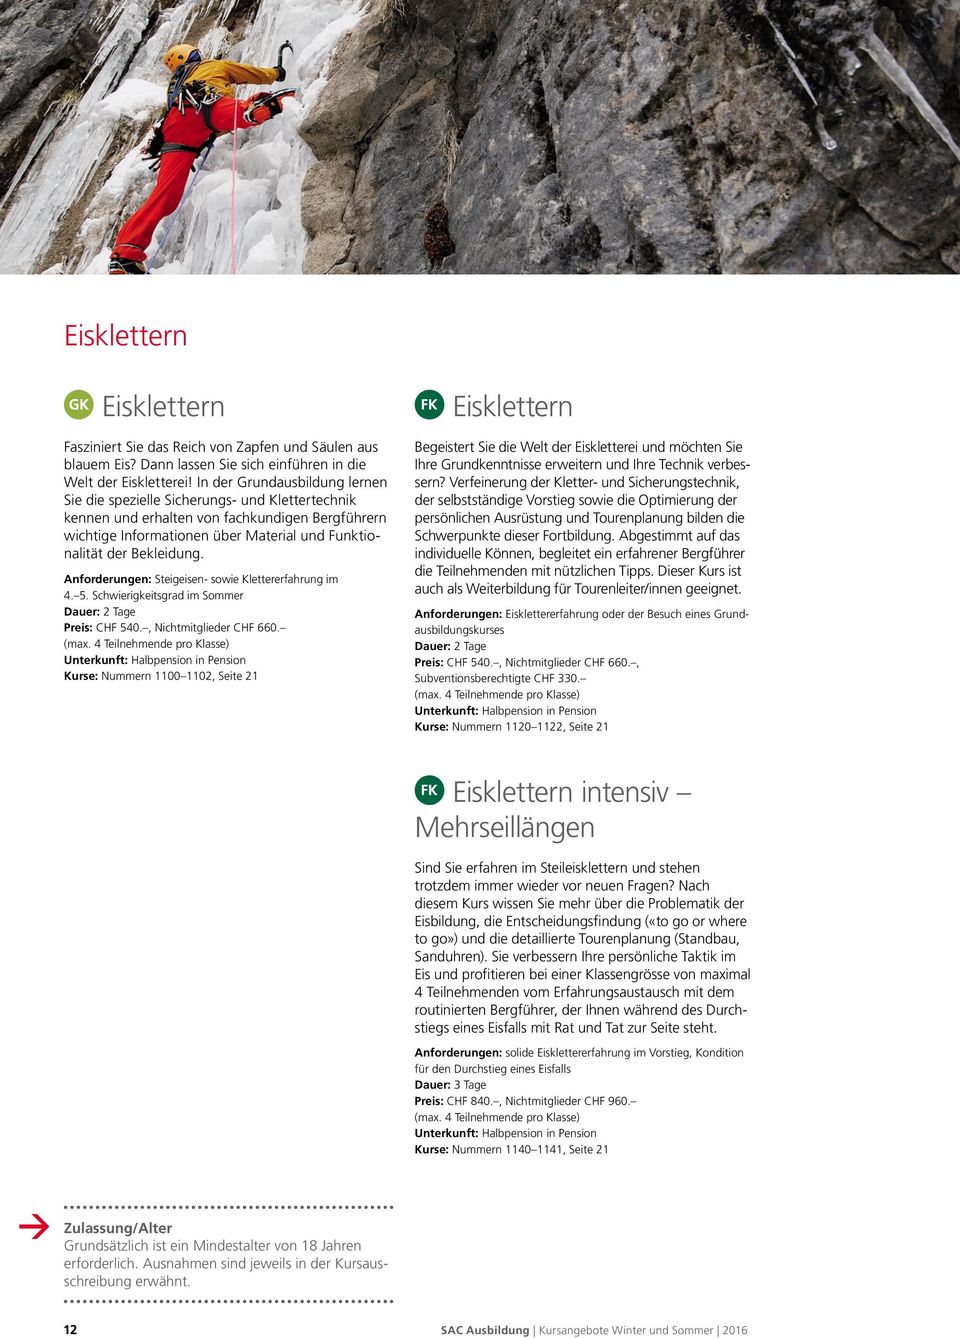 Anforderungen: Steigeisen sowie Klettererfahrung im 4. 5. Schwierigkeitsgrad im Sommer Dauer: 2 Tage Preis: CHF 540., Nichtmitglieder CHF 660. (max.